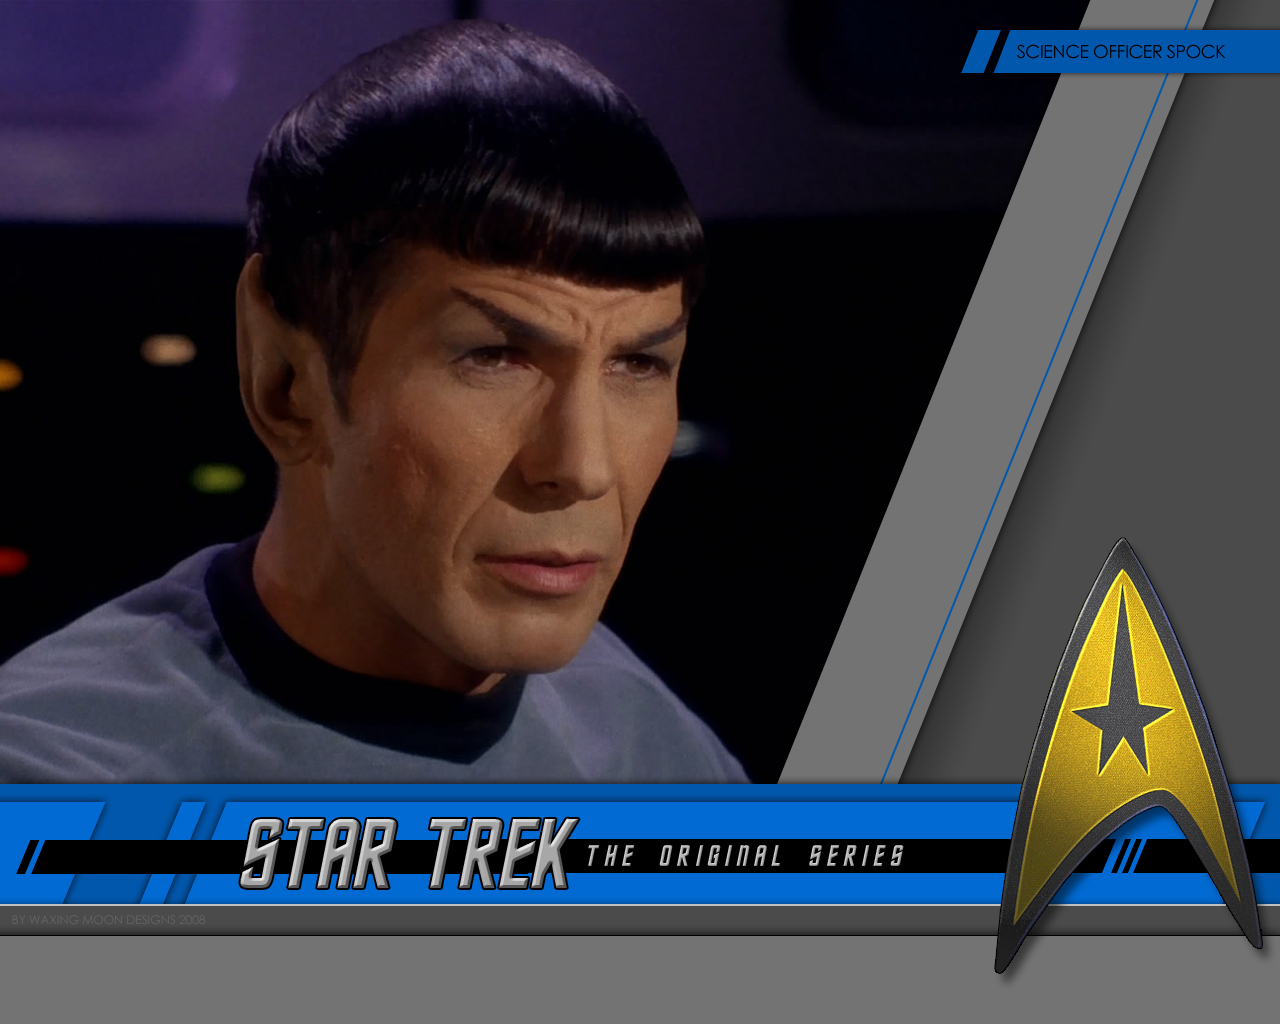 Mr. Spock Trek Original Series Wallpaper